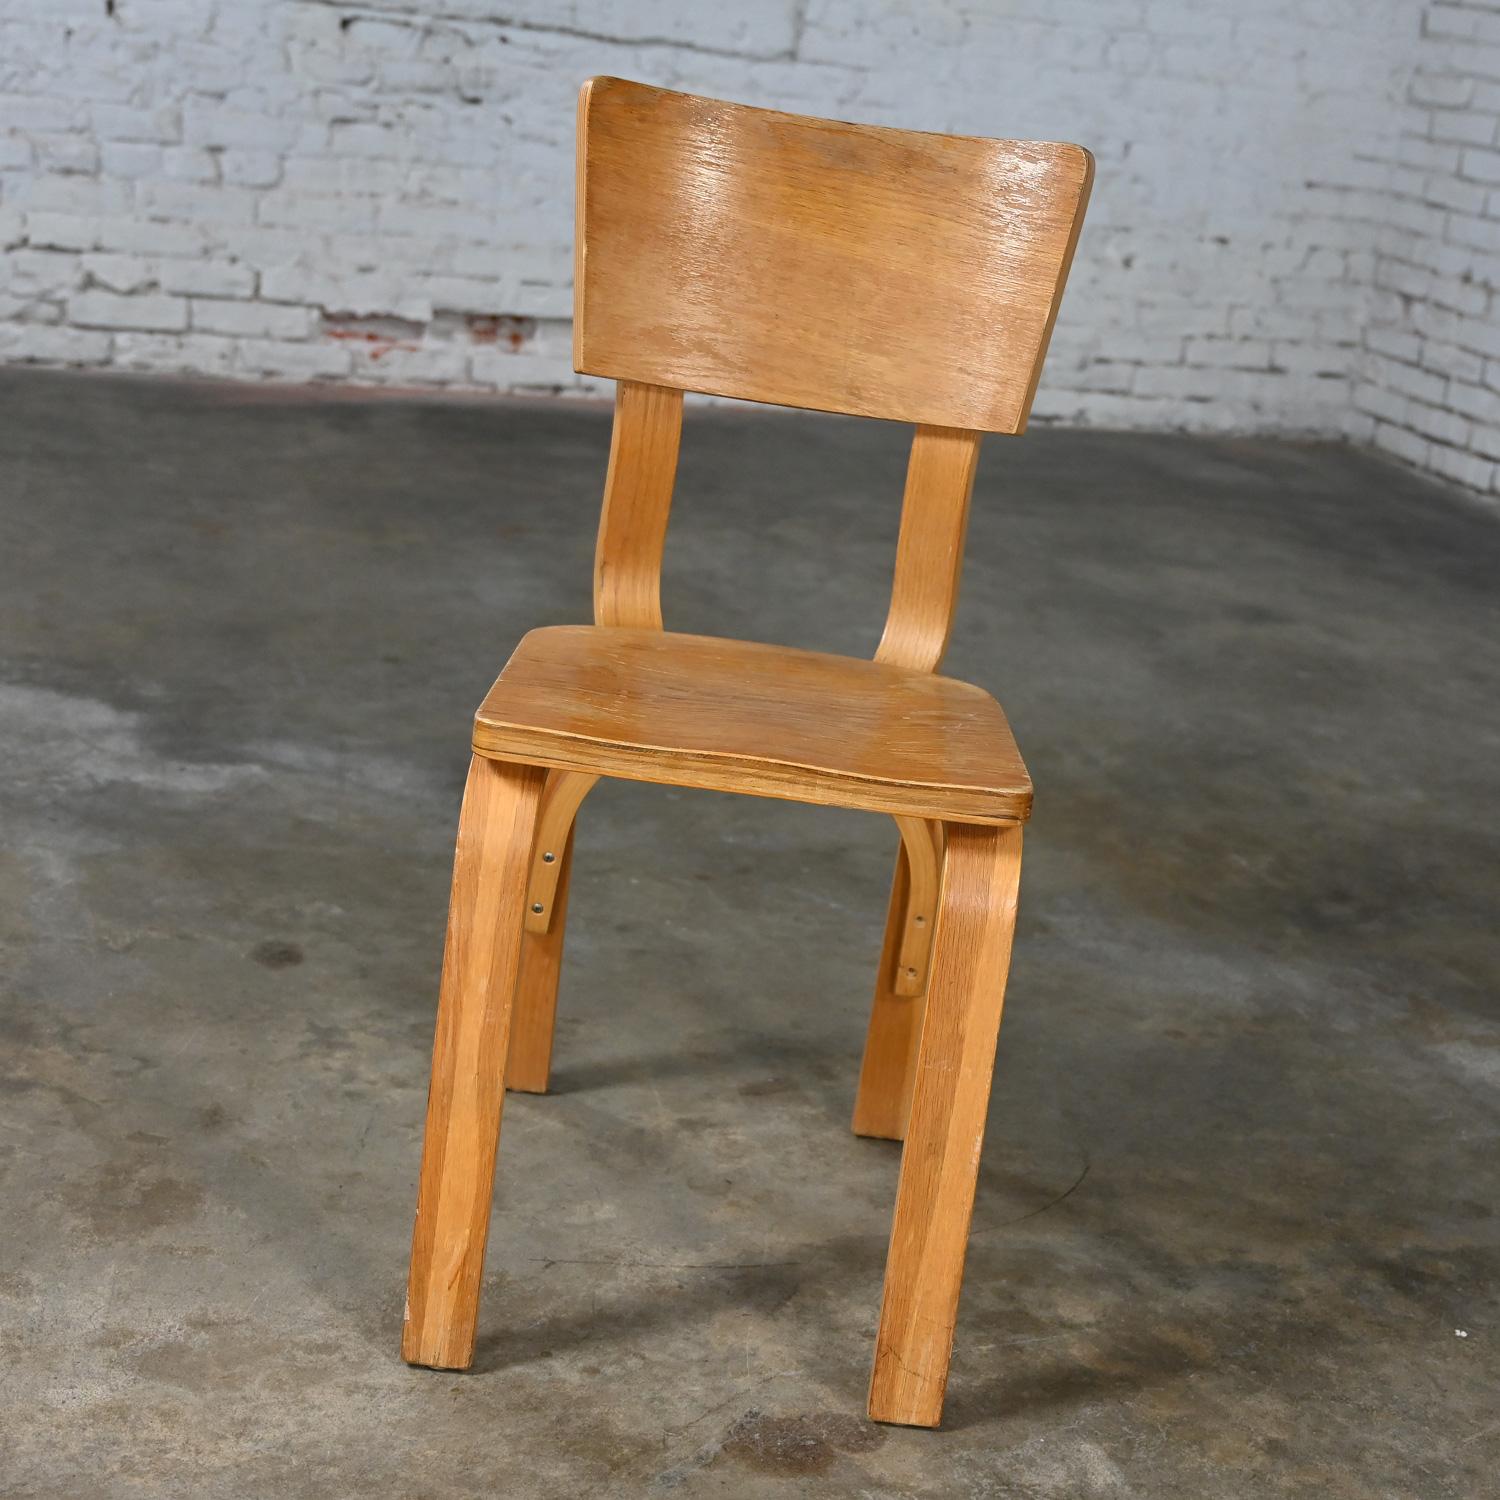 Handsome Vintage Mid-Century Modern Thonet #1216-S17-B1 Esszimmerstühle aus gebogenen Eiche Sperrholz mit Sattel Sitze und einen einzigen Bogen zurück Bahre 22 zur Verfügung, separat zu verkaufen und preislich pro Stuhl, wie ist Zustand. Siehe